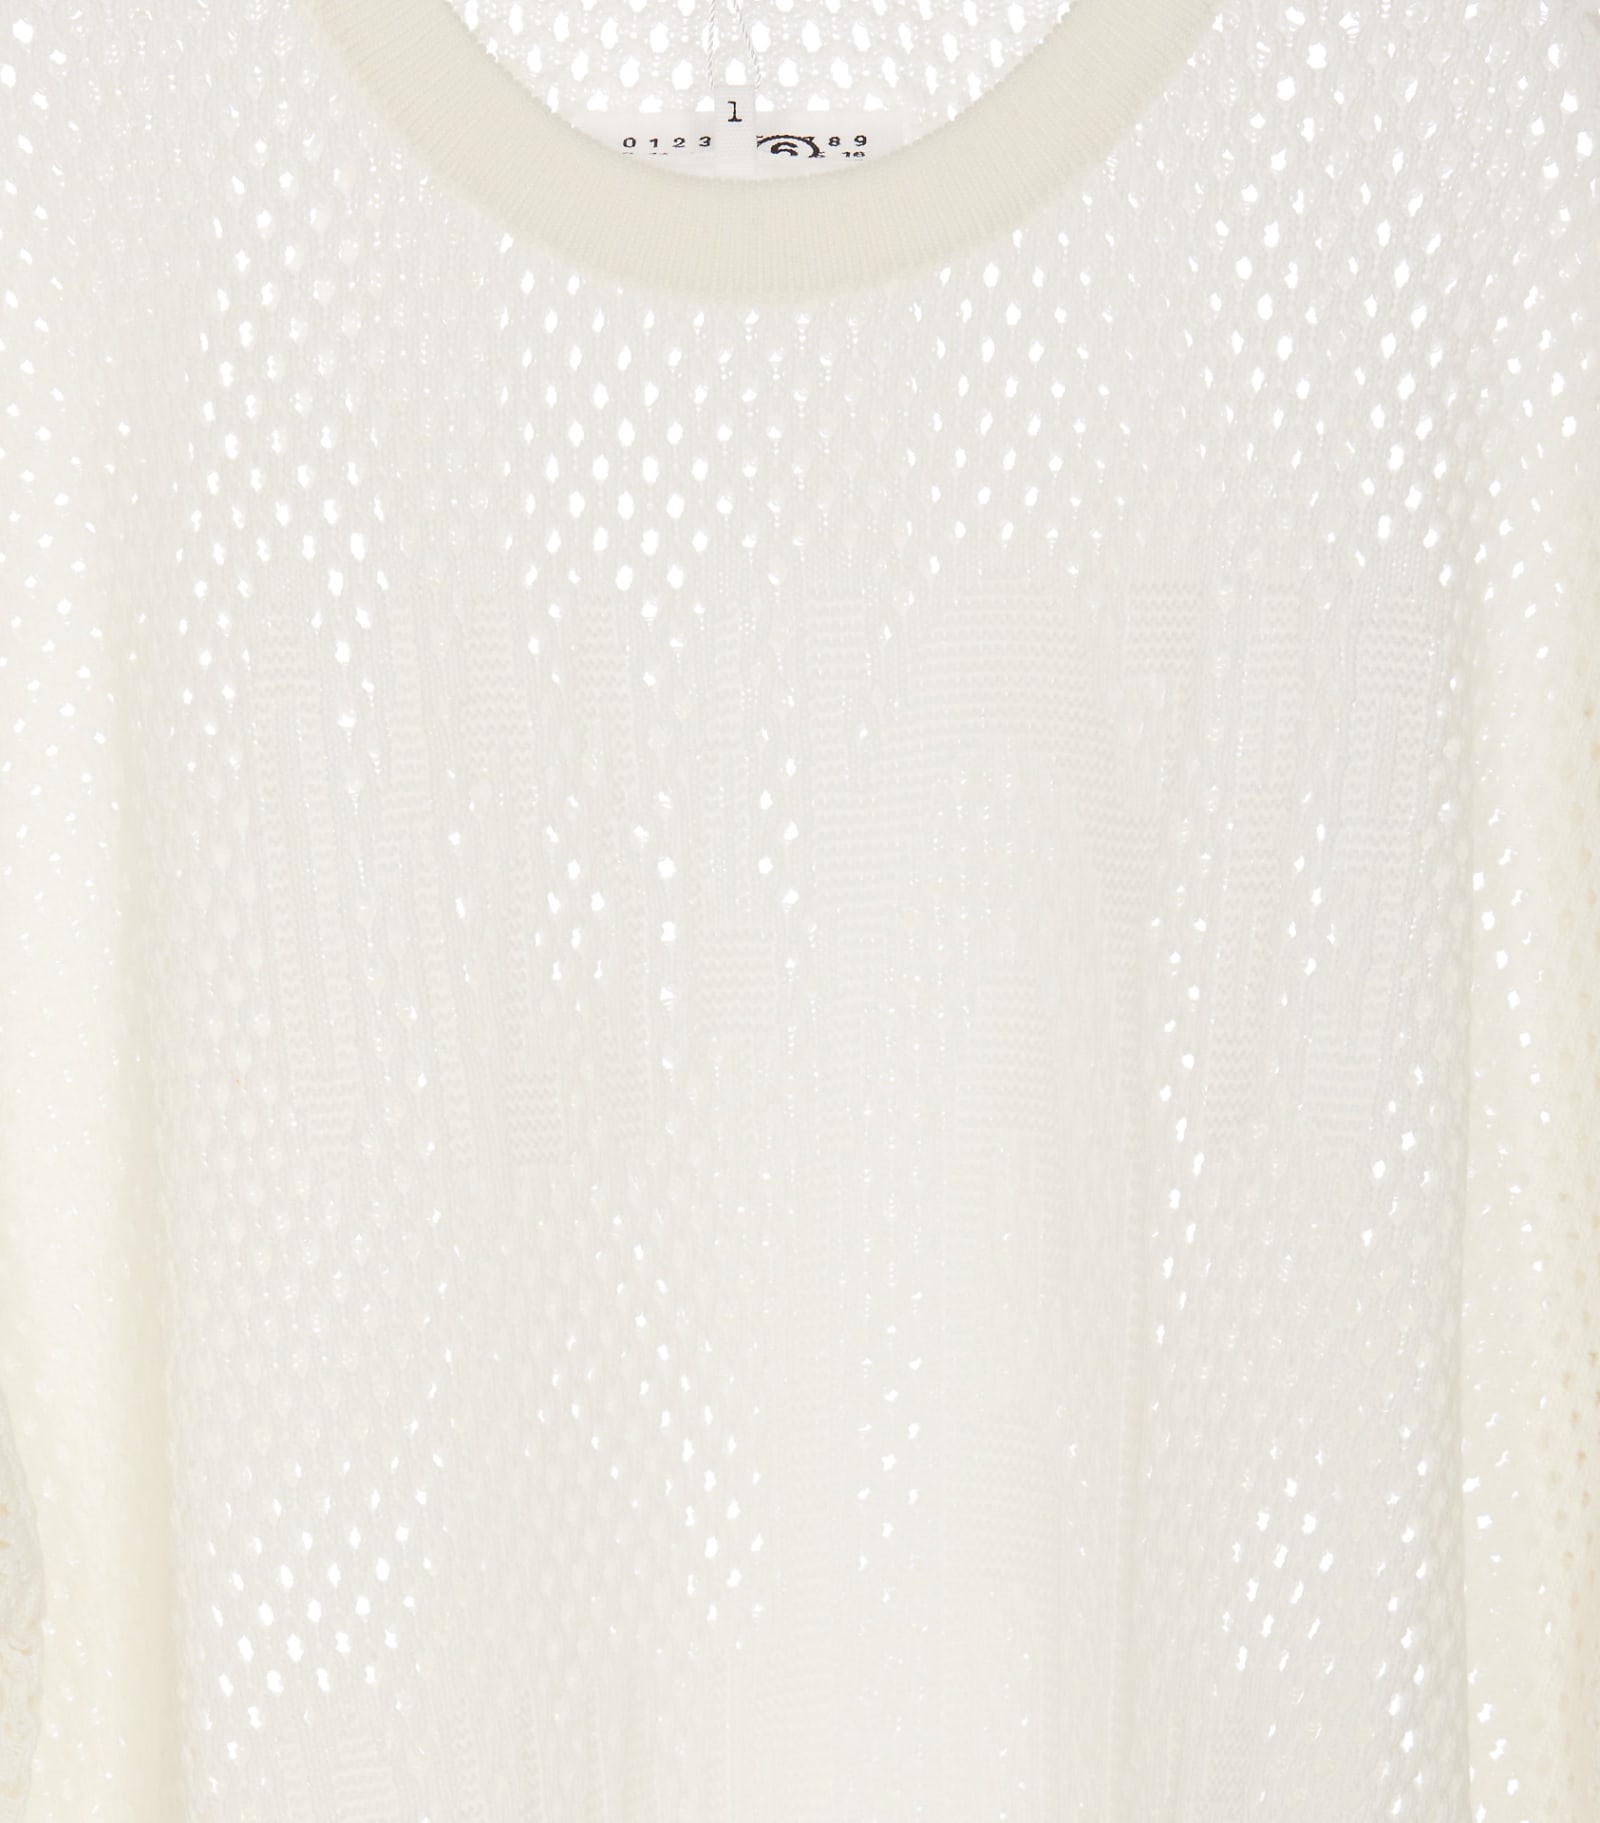 Shop Mm6 Maison Margiela Net Long Sweater In White